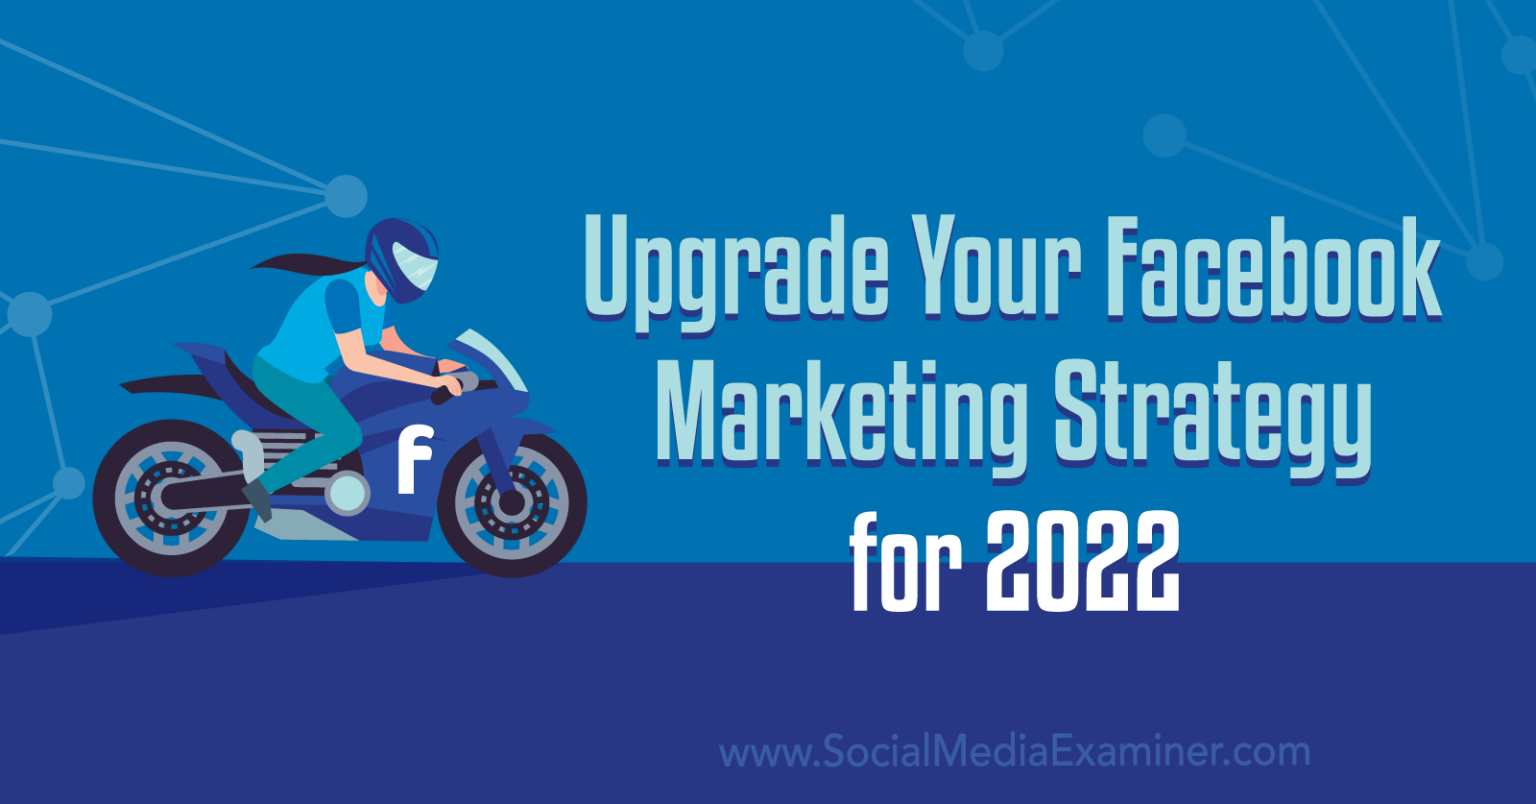 2022년 페이스북 마케팅 전략을 위한 5가지 업그레이드 방법 | Digital Marketing Curation